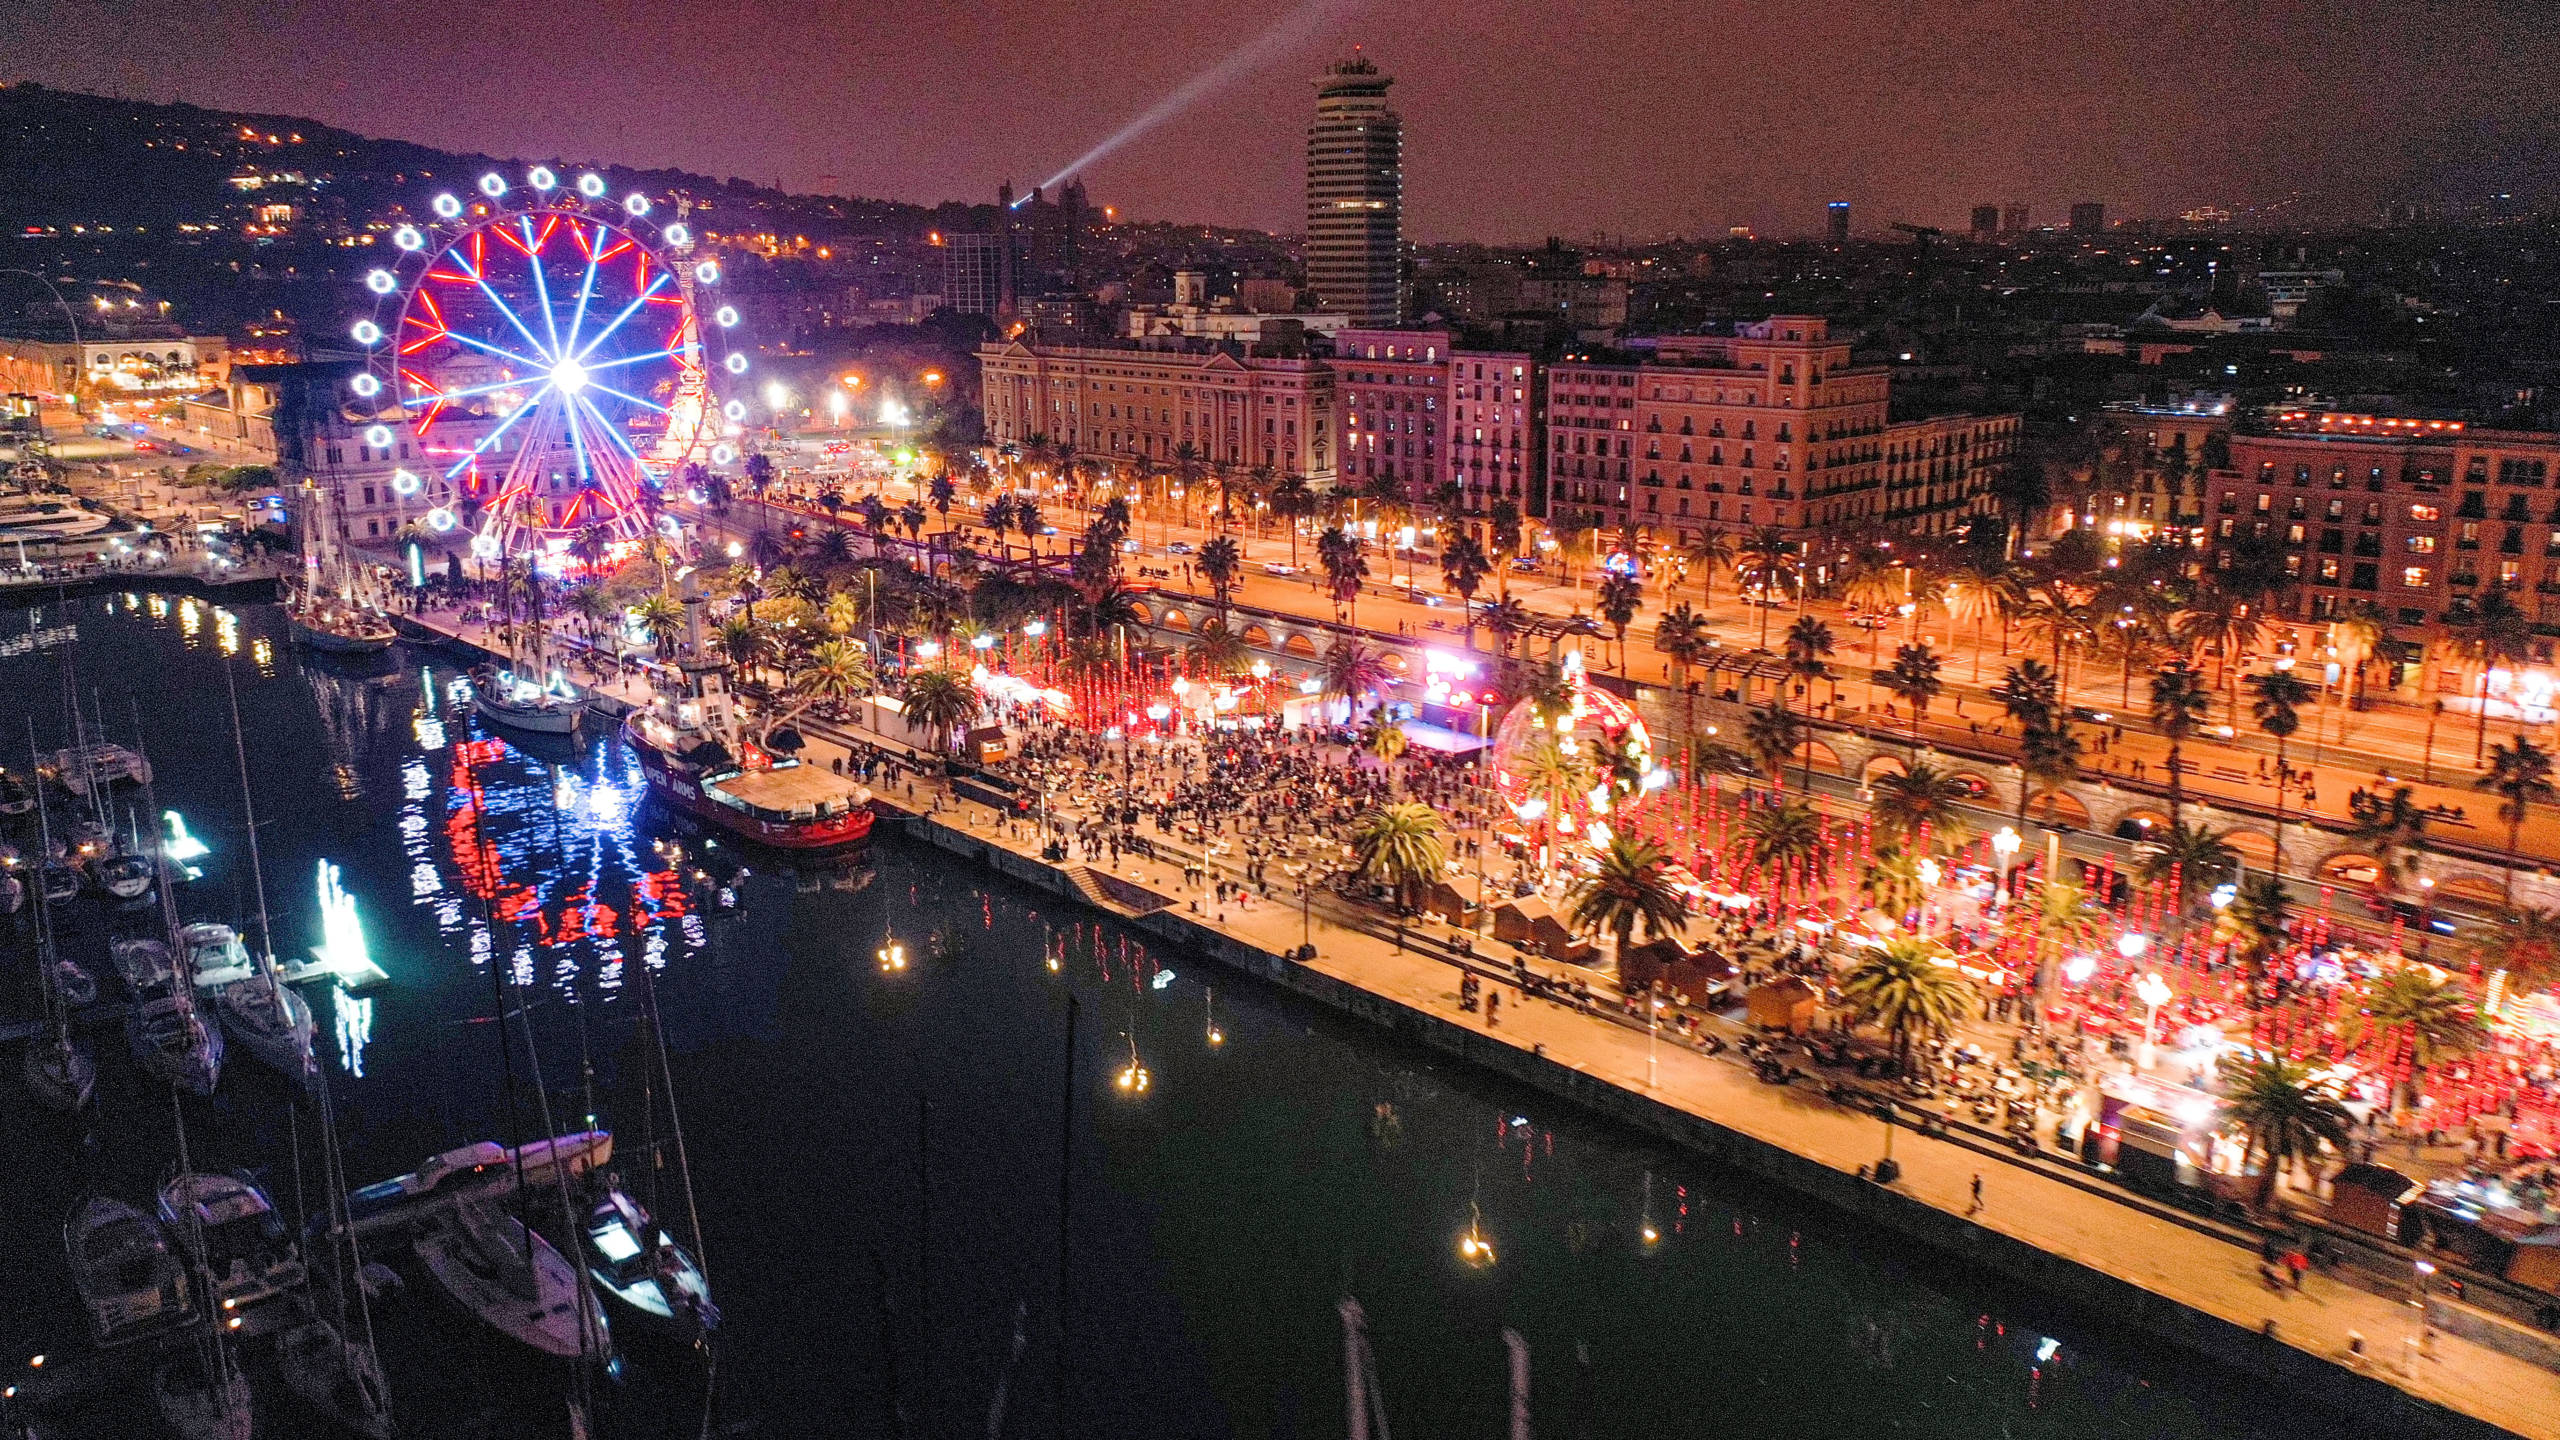 Marina Port Vell – Christmas Port Vell – Barcelona Christmas